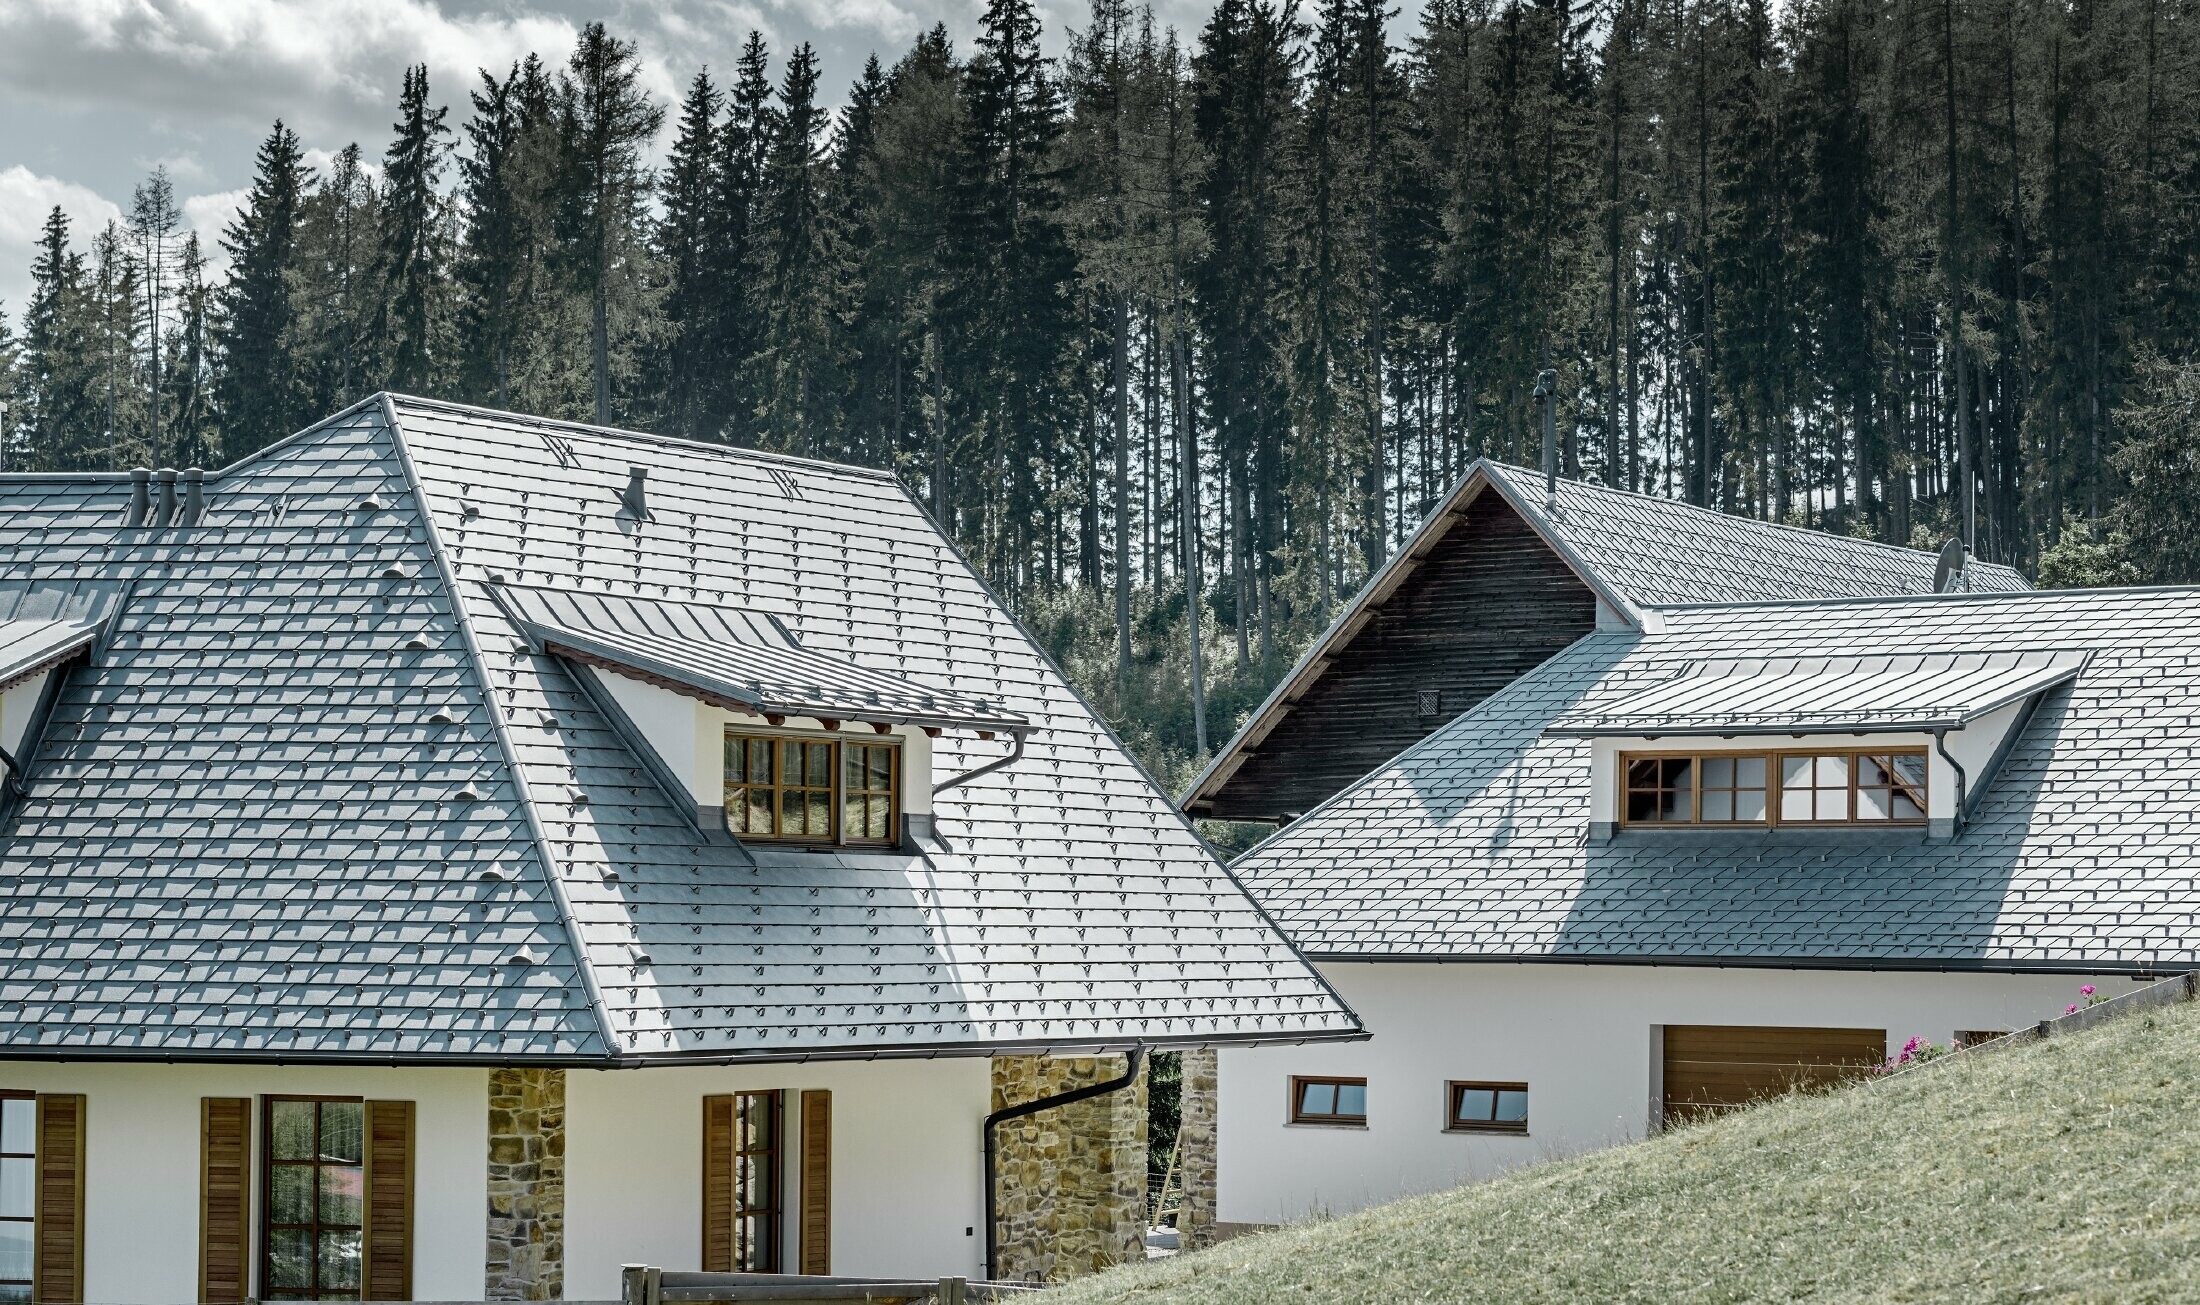 Rückansicht des Einfamilienhausees in Hanglage; Das Dach wurde mit der Alu-Dachschindel in Steingrau eingedeckt, die Schleppgauben mit Stehalz, ebenfalls in Steingrau. In Hintergrund erkennt man einen Wald.